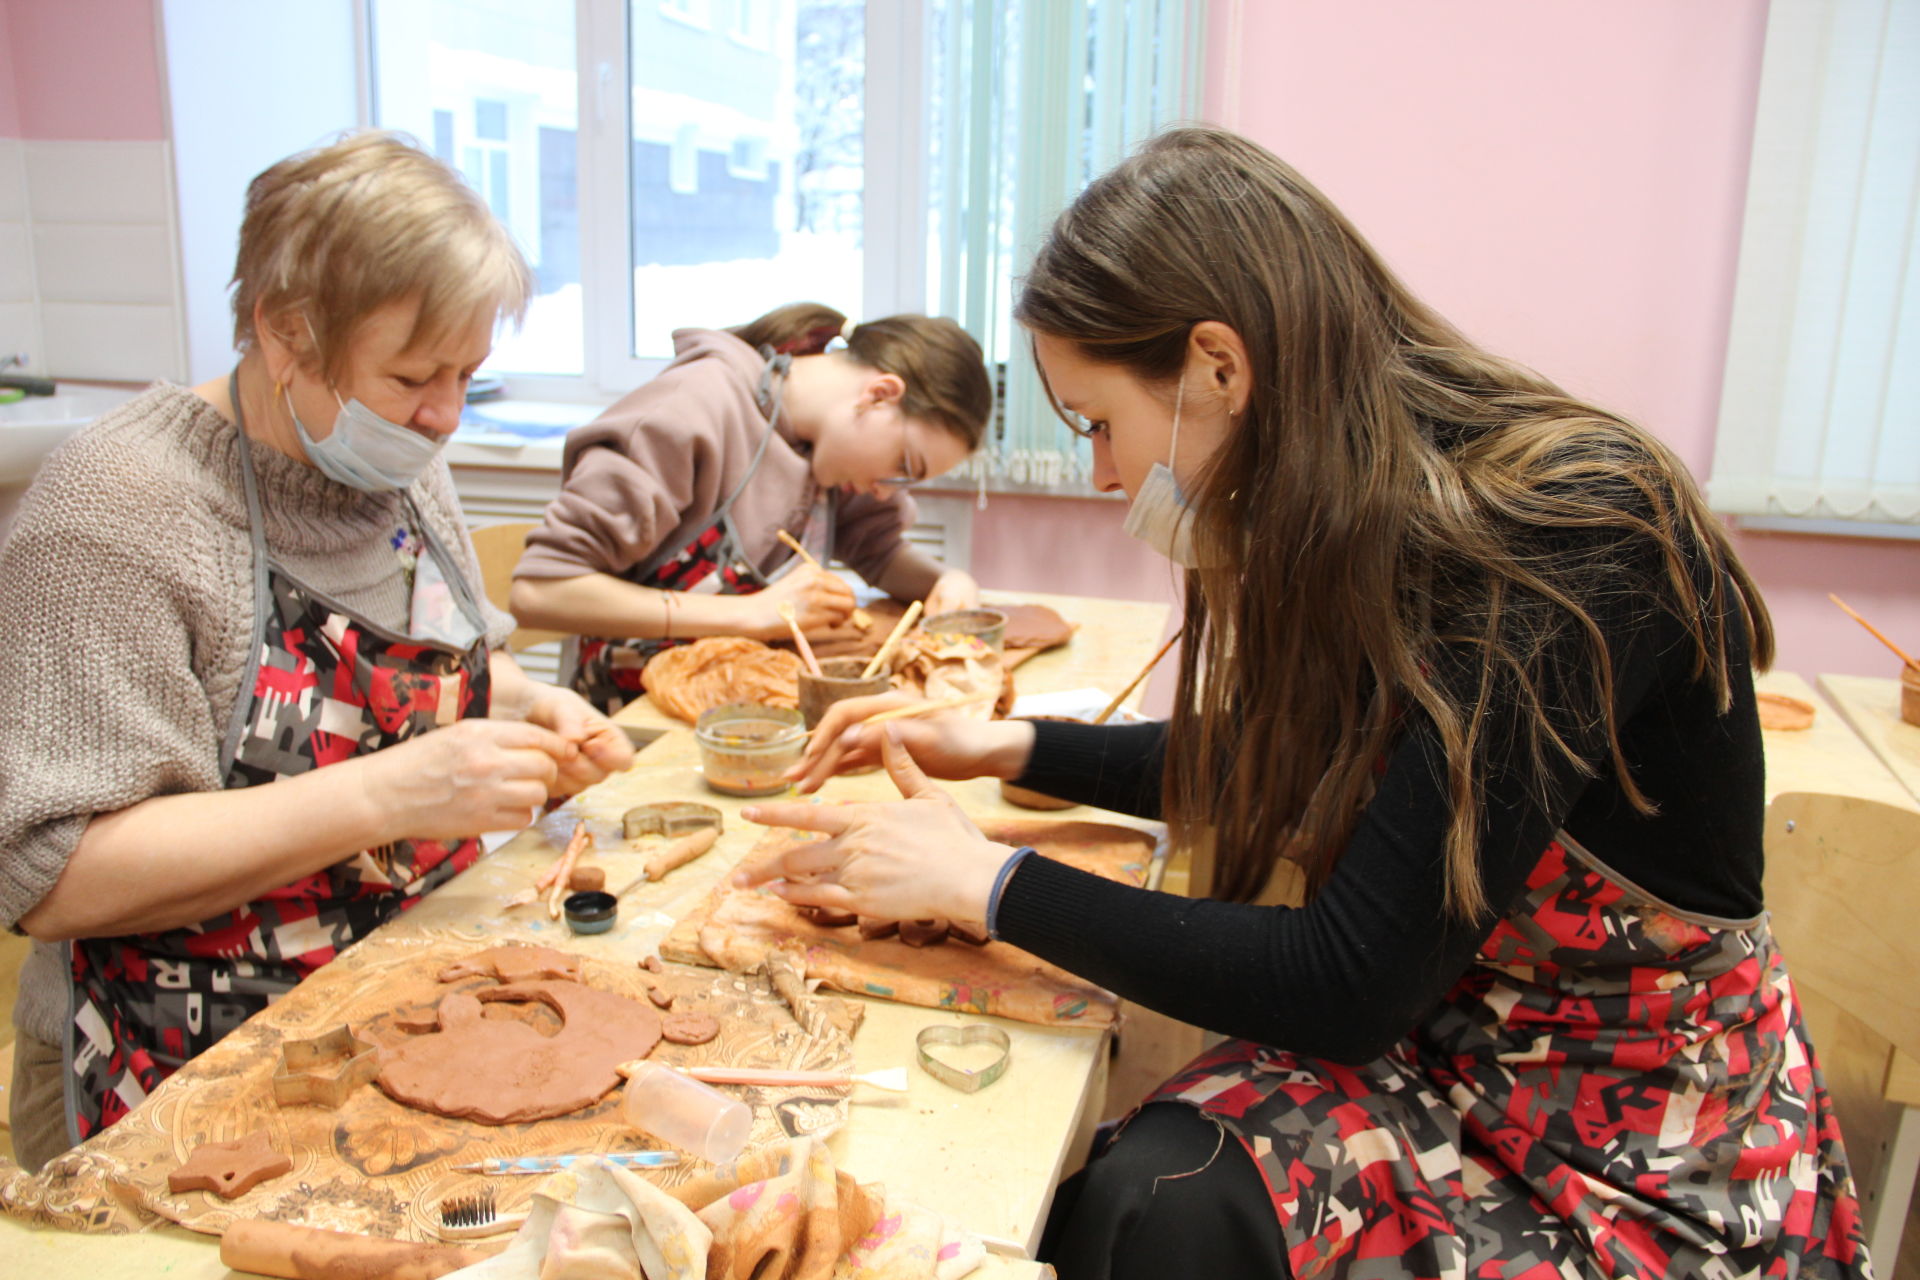 Заинский мастер гончарного мастерства Лилия Кузьмина делится своим талантом с детьми